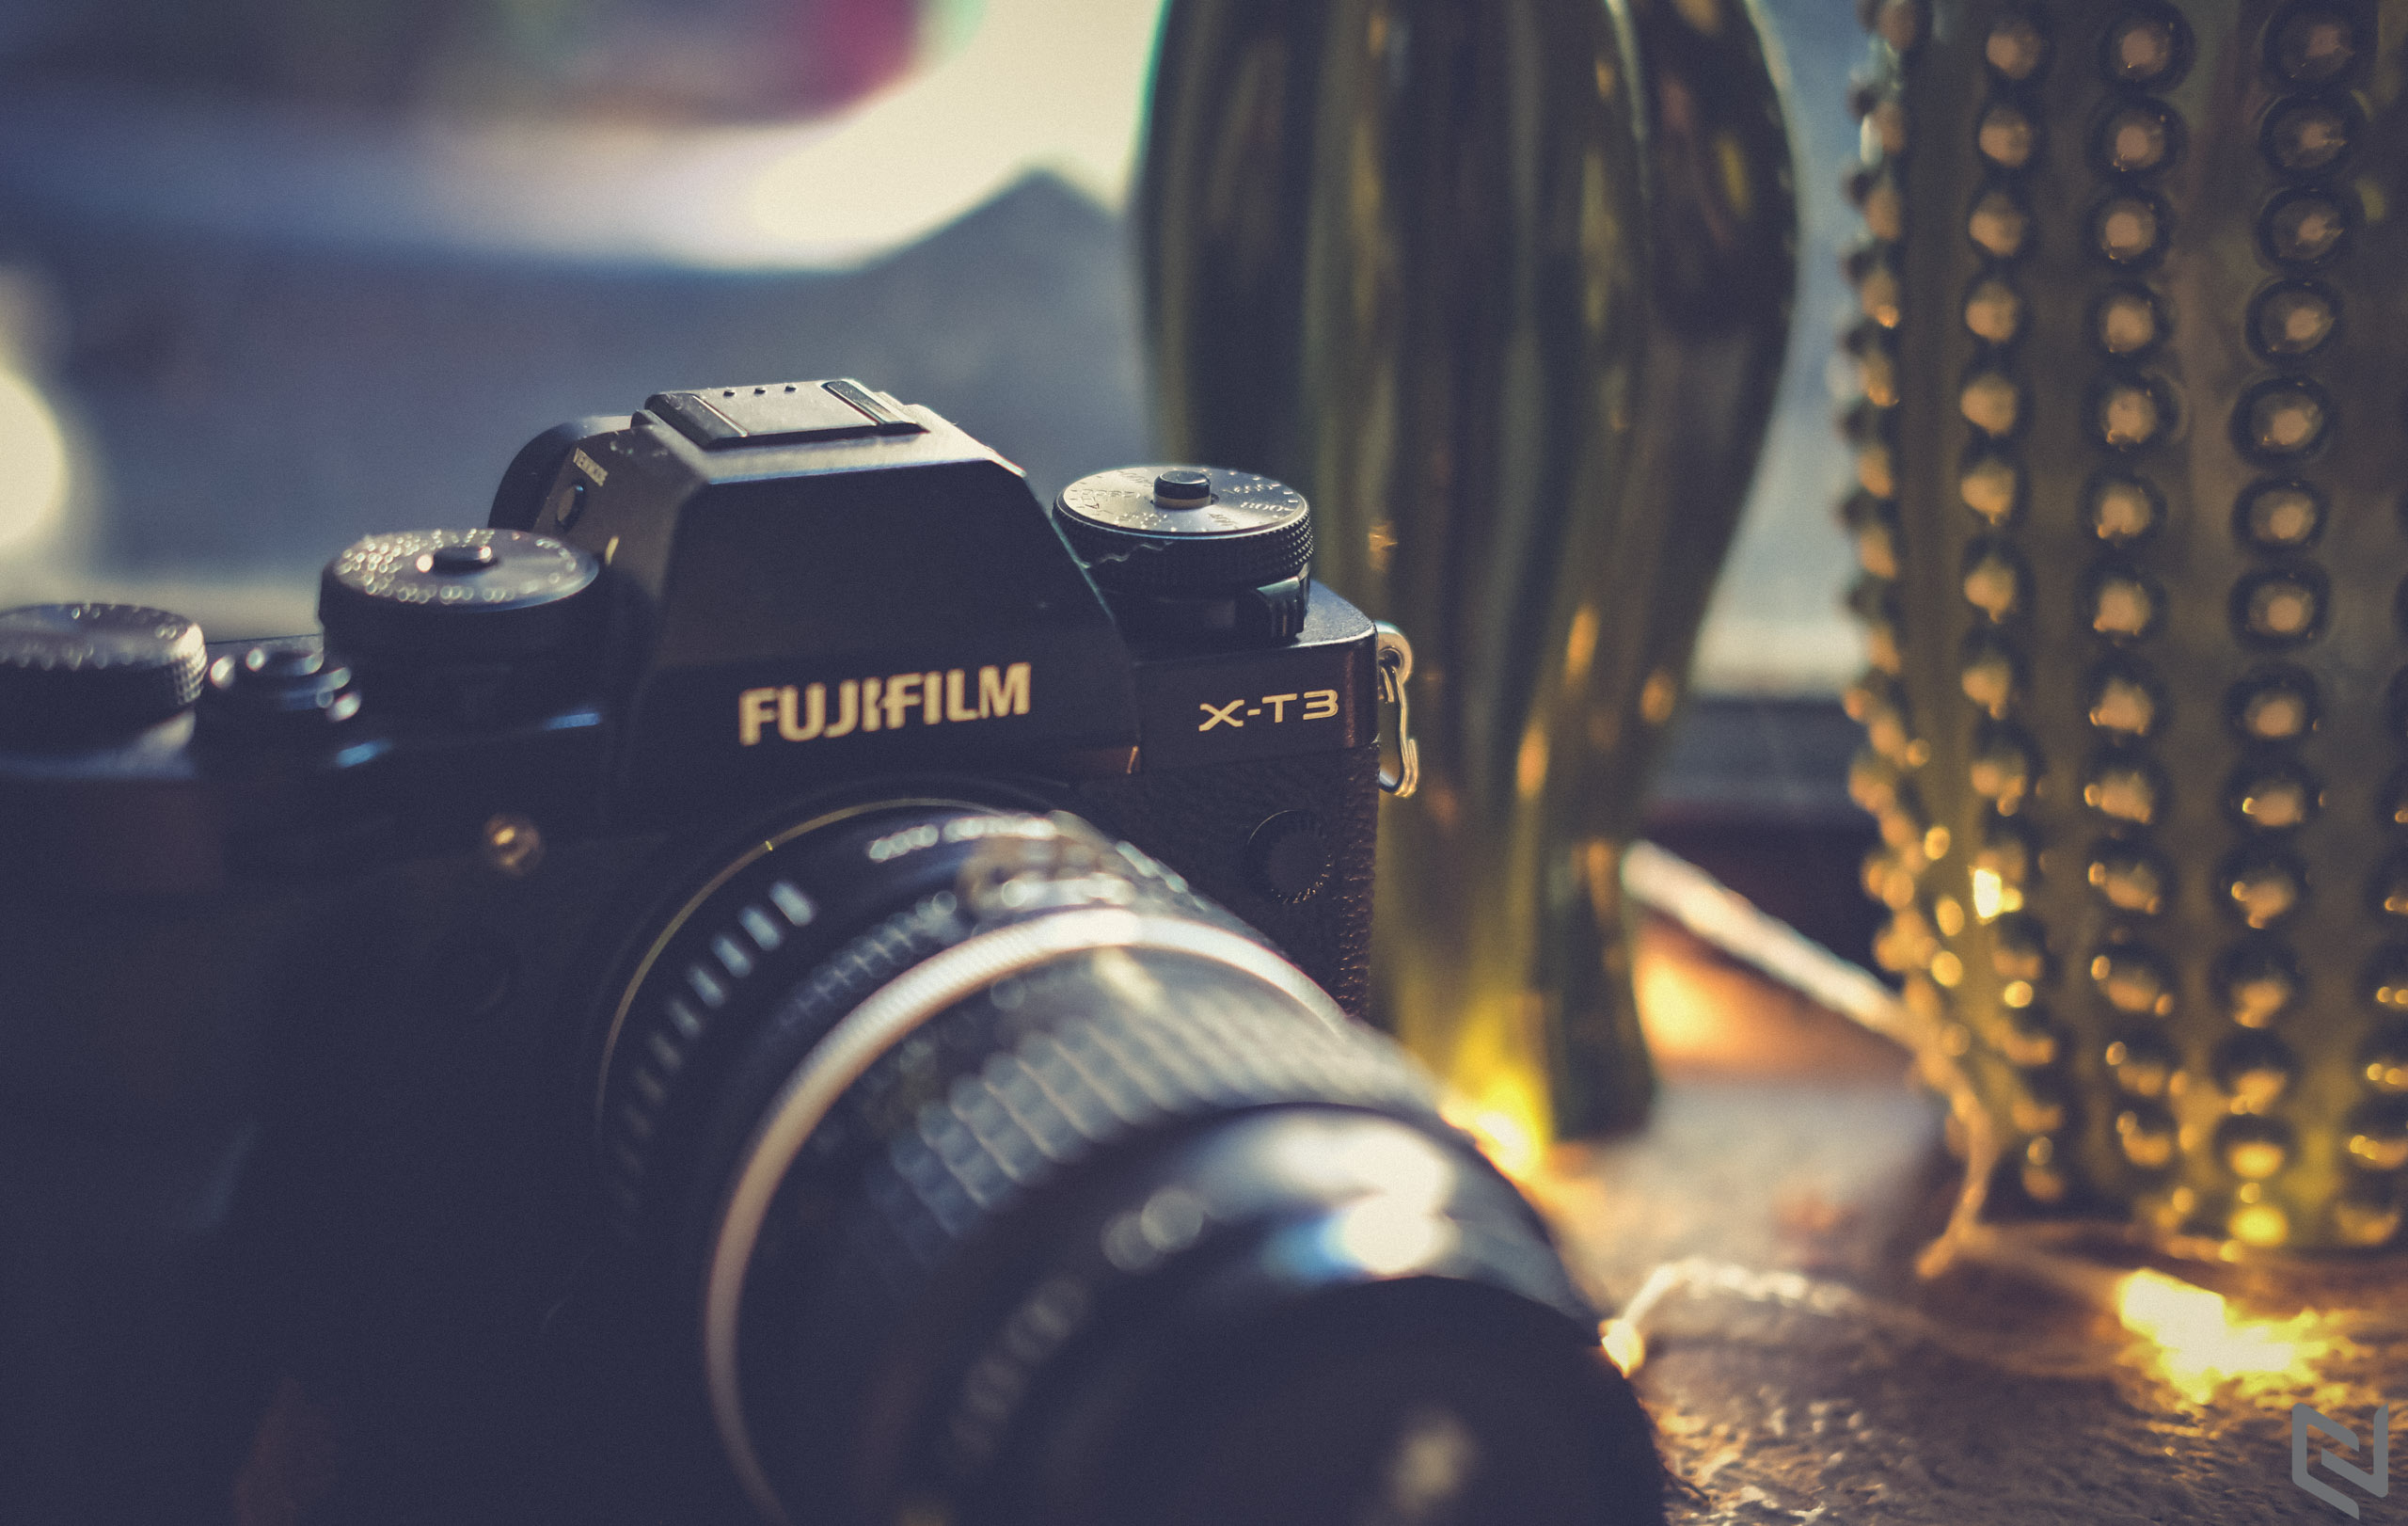 Fujifilm tung bản firmware 3.01 cho máy ảnh X-T3, sửa lỗi hiếm nhưng rất khó chịu cho người dùng